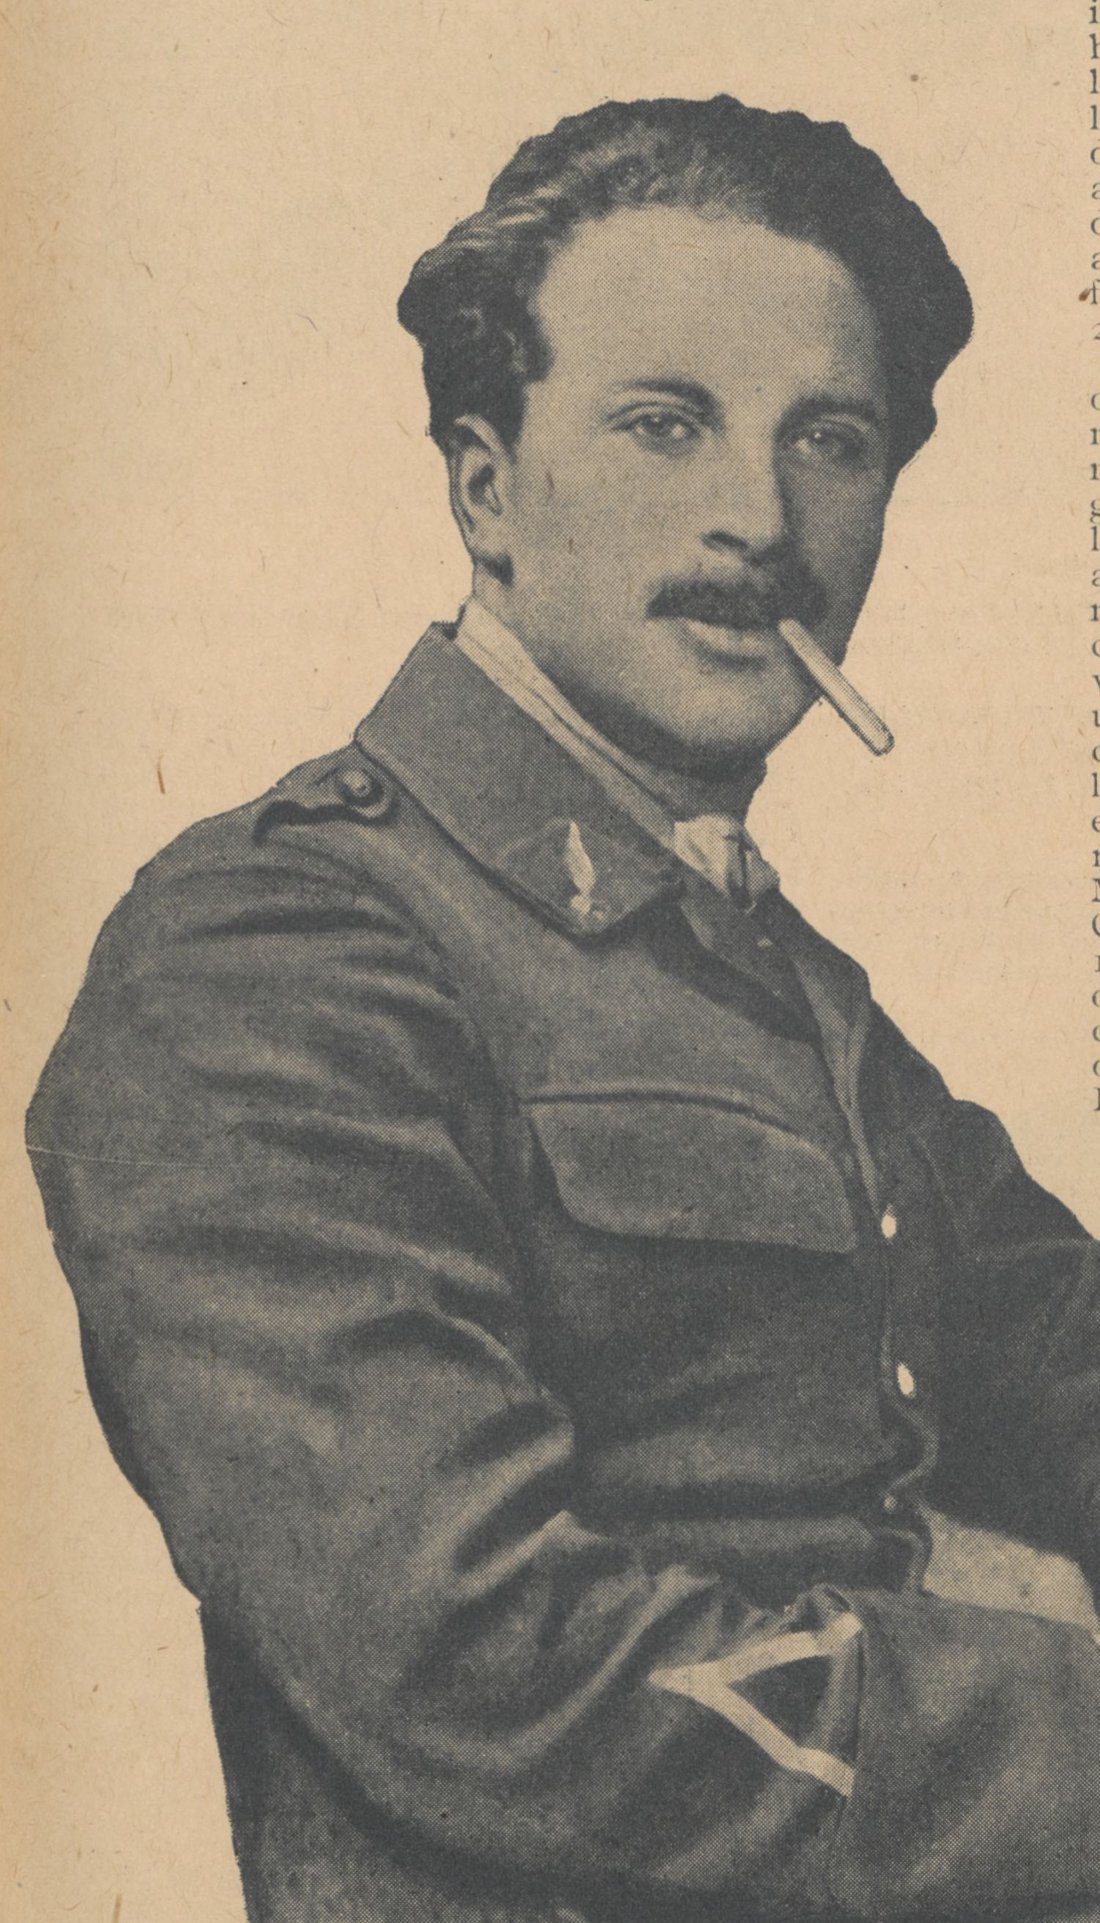 Jacques Ehrlich dans La guerre aérienne illustrée, 24 octobre 1918. Source : Gallica / BnF.